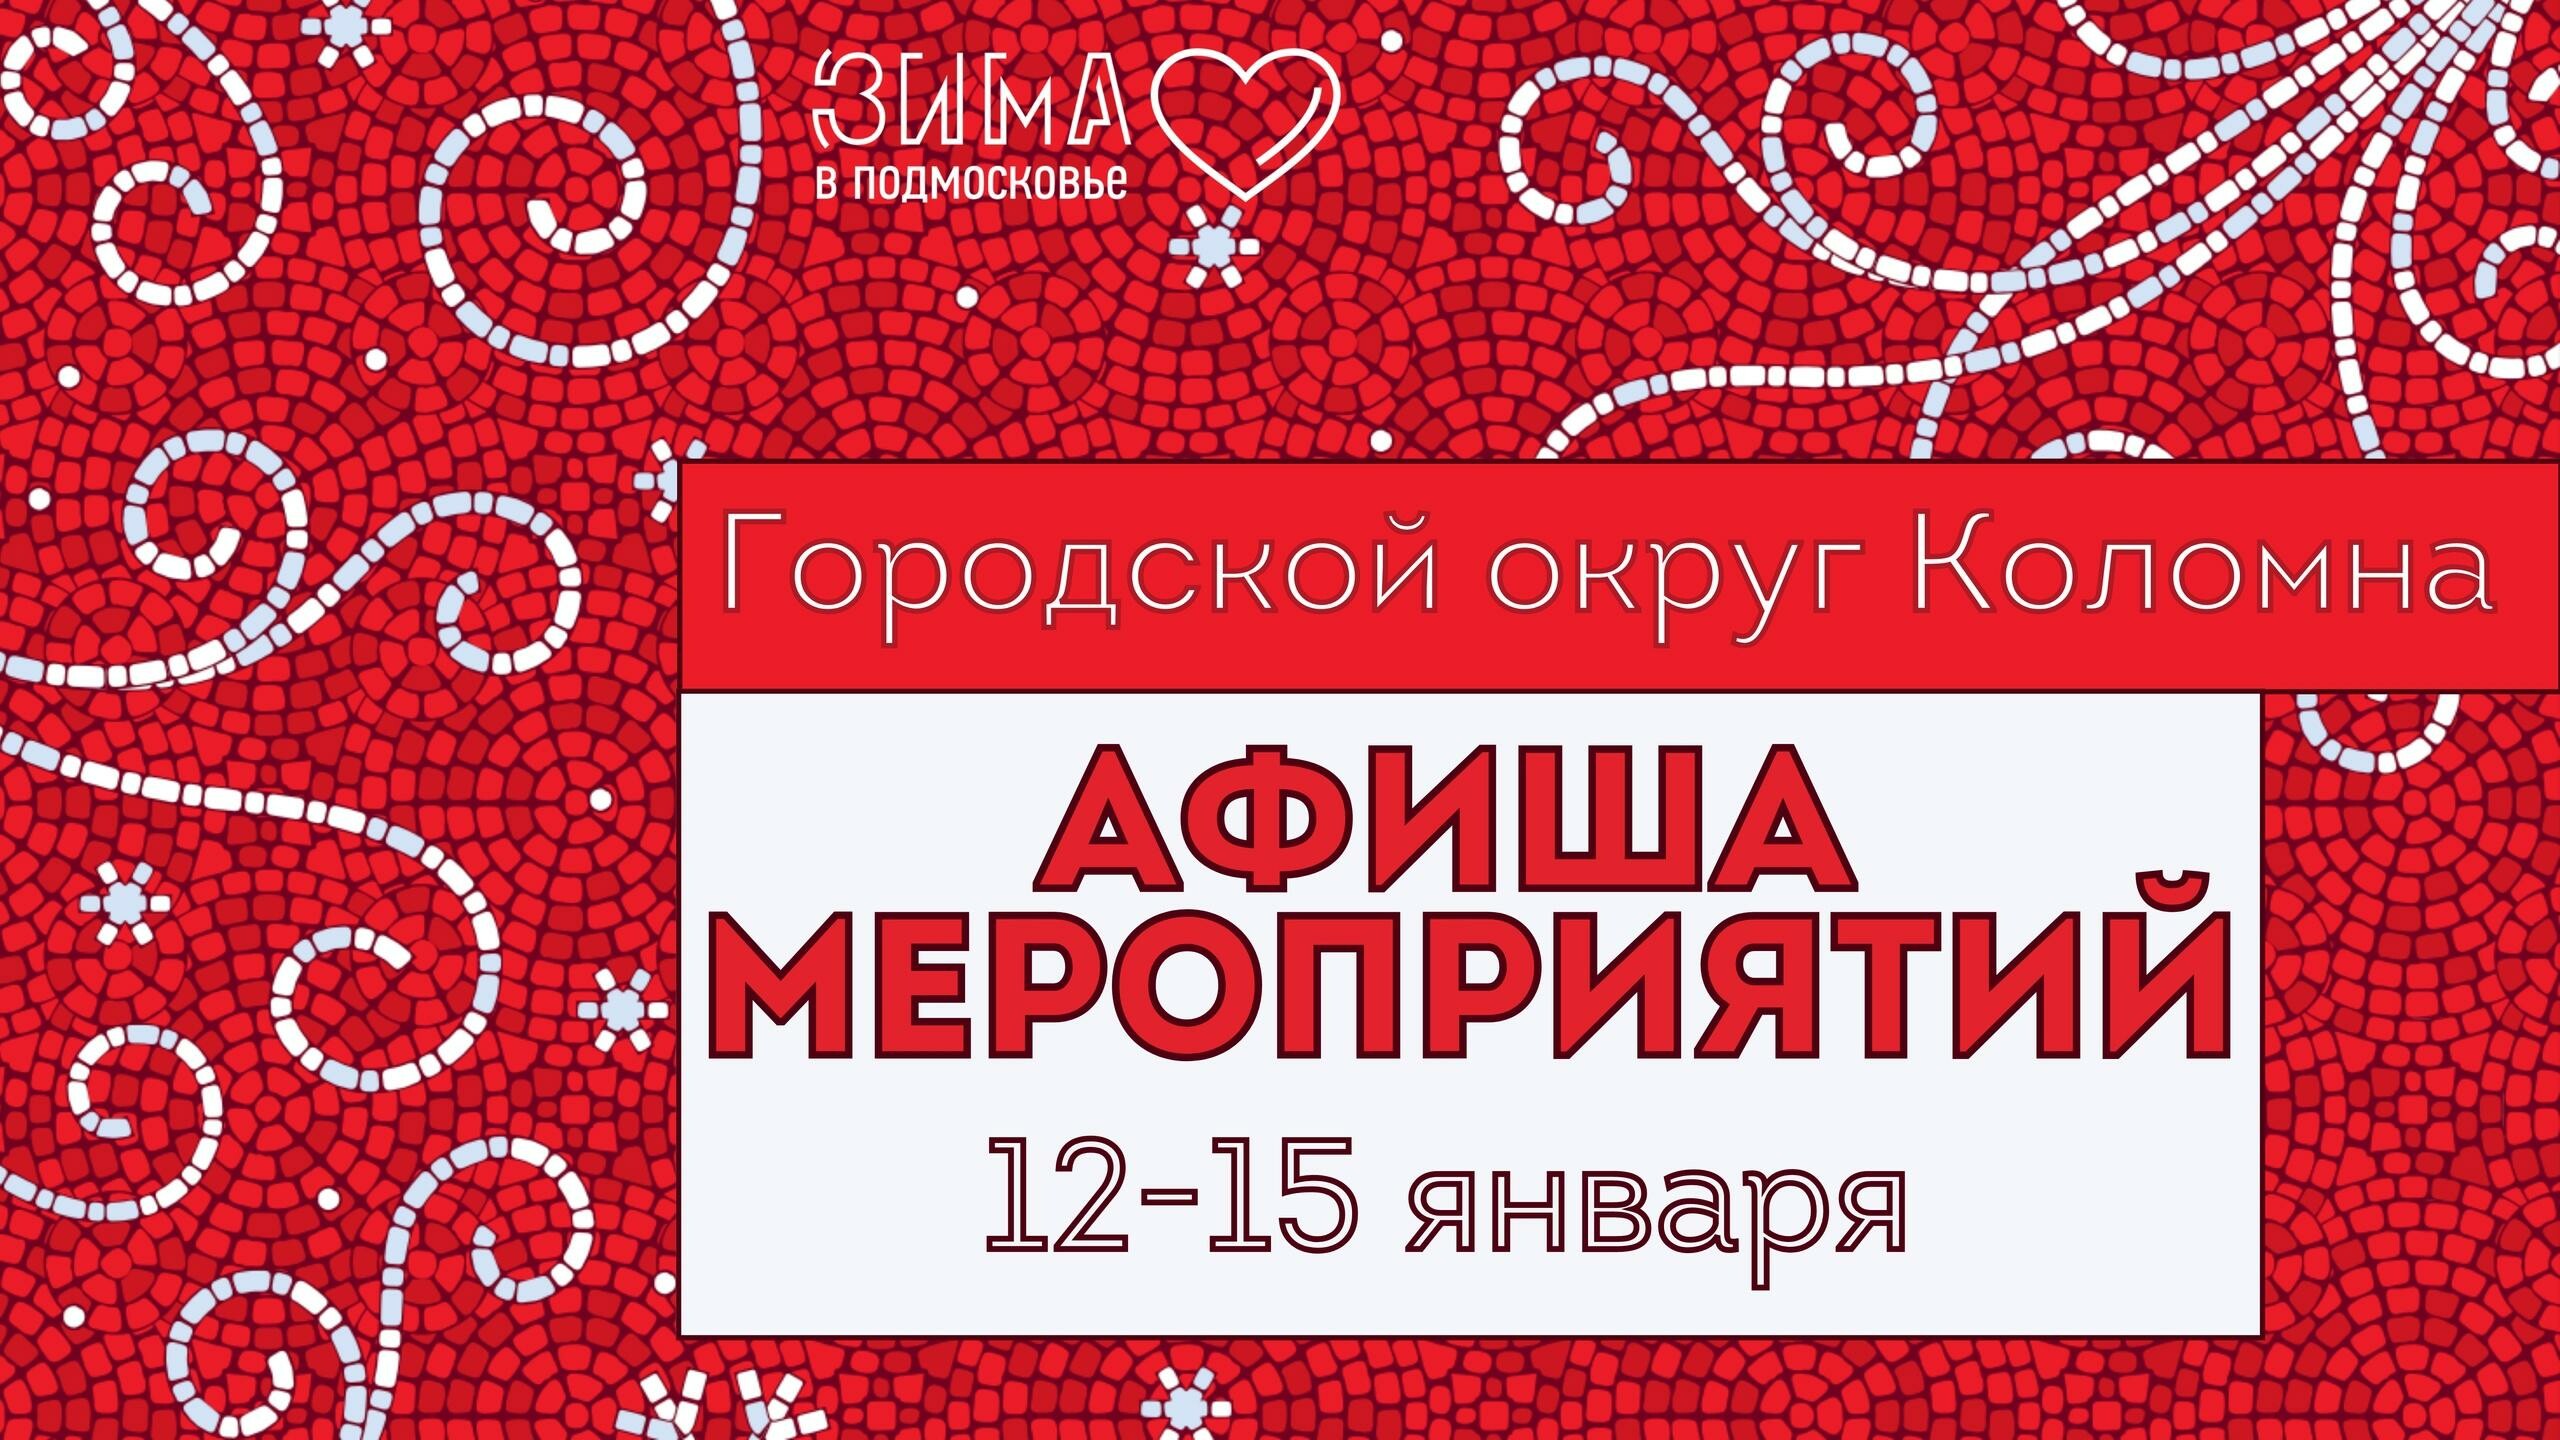 Афиша мероприятия в Городском округе Коломна с 12 по 15 января